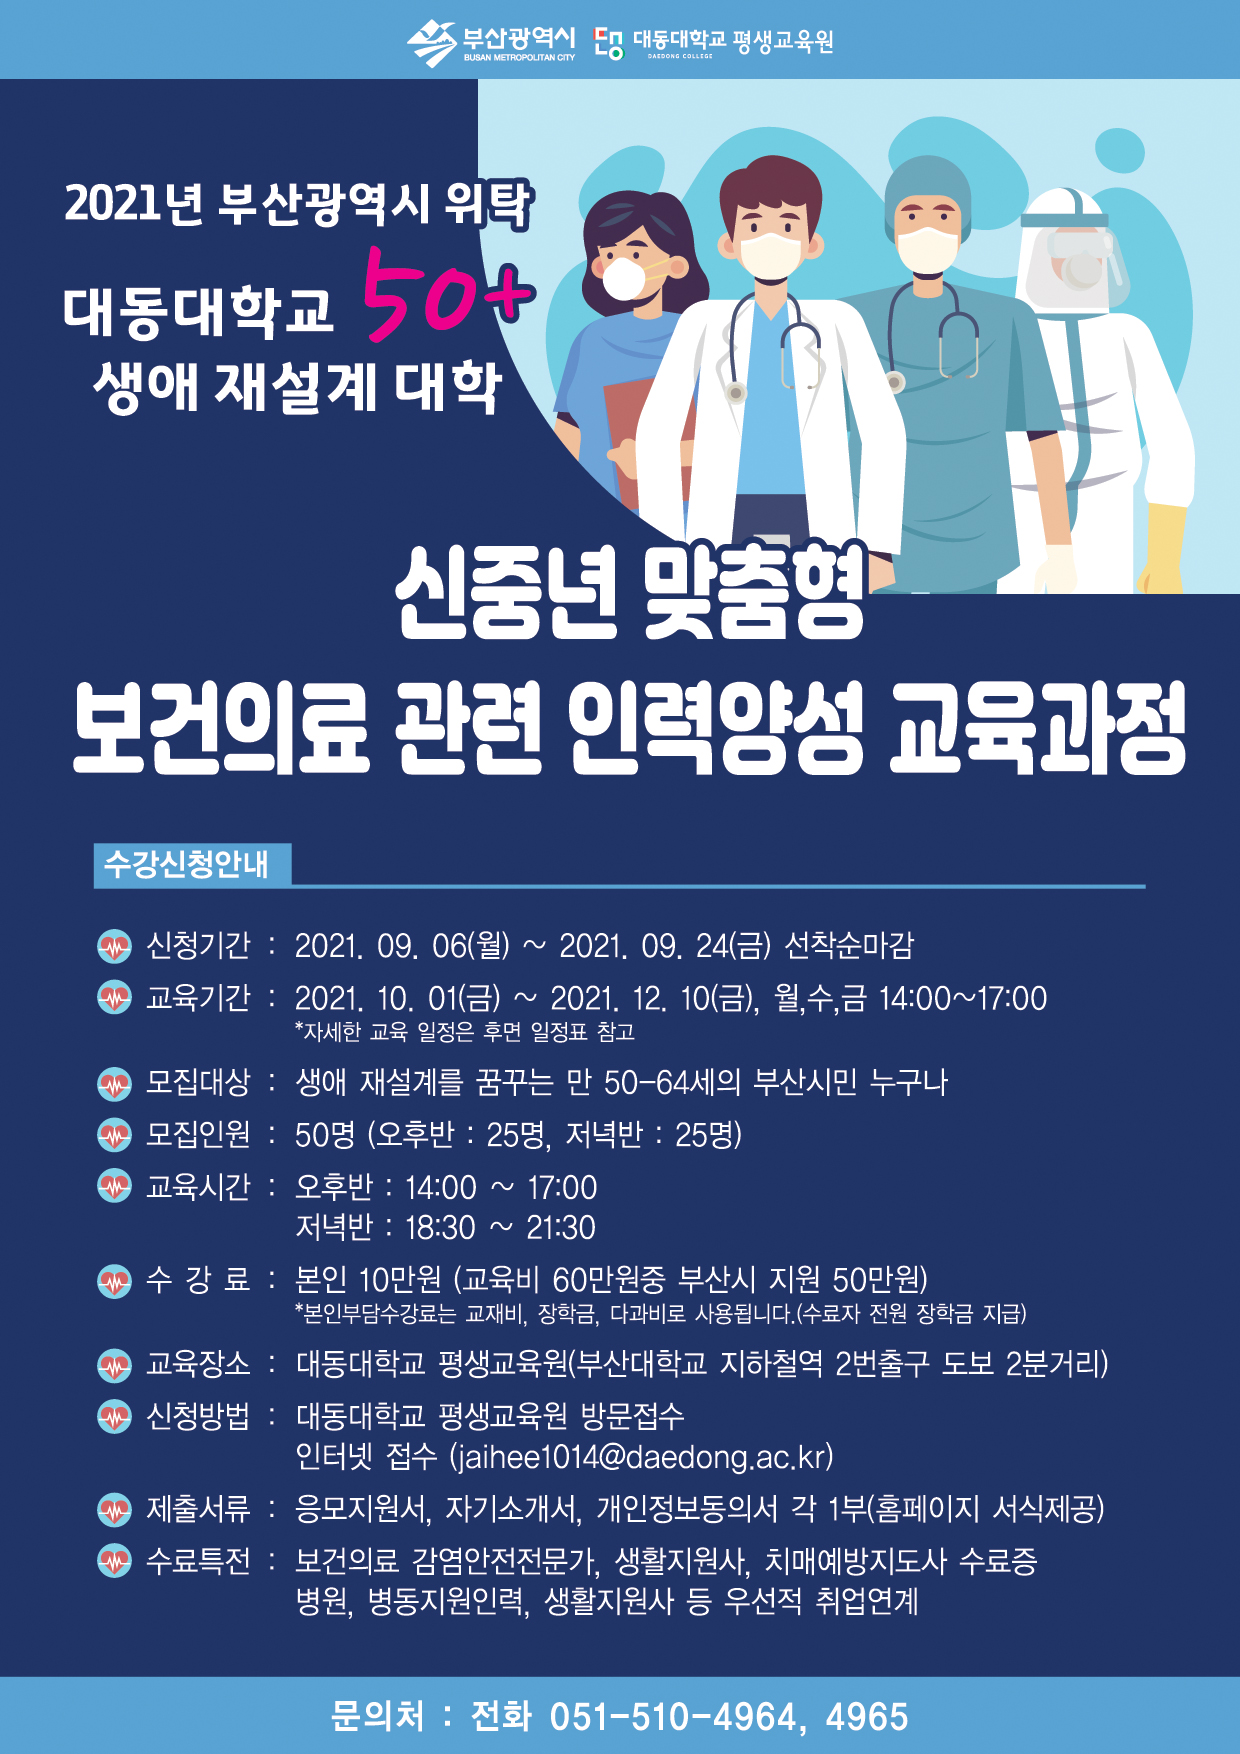 2021년 부산광역시 위탁 대동대학교 50+ 생애 재설계 대학 교육생 모집